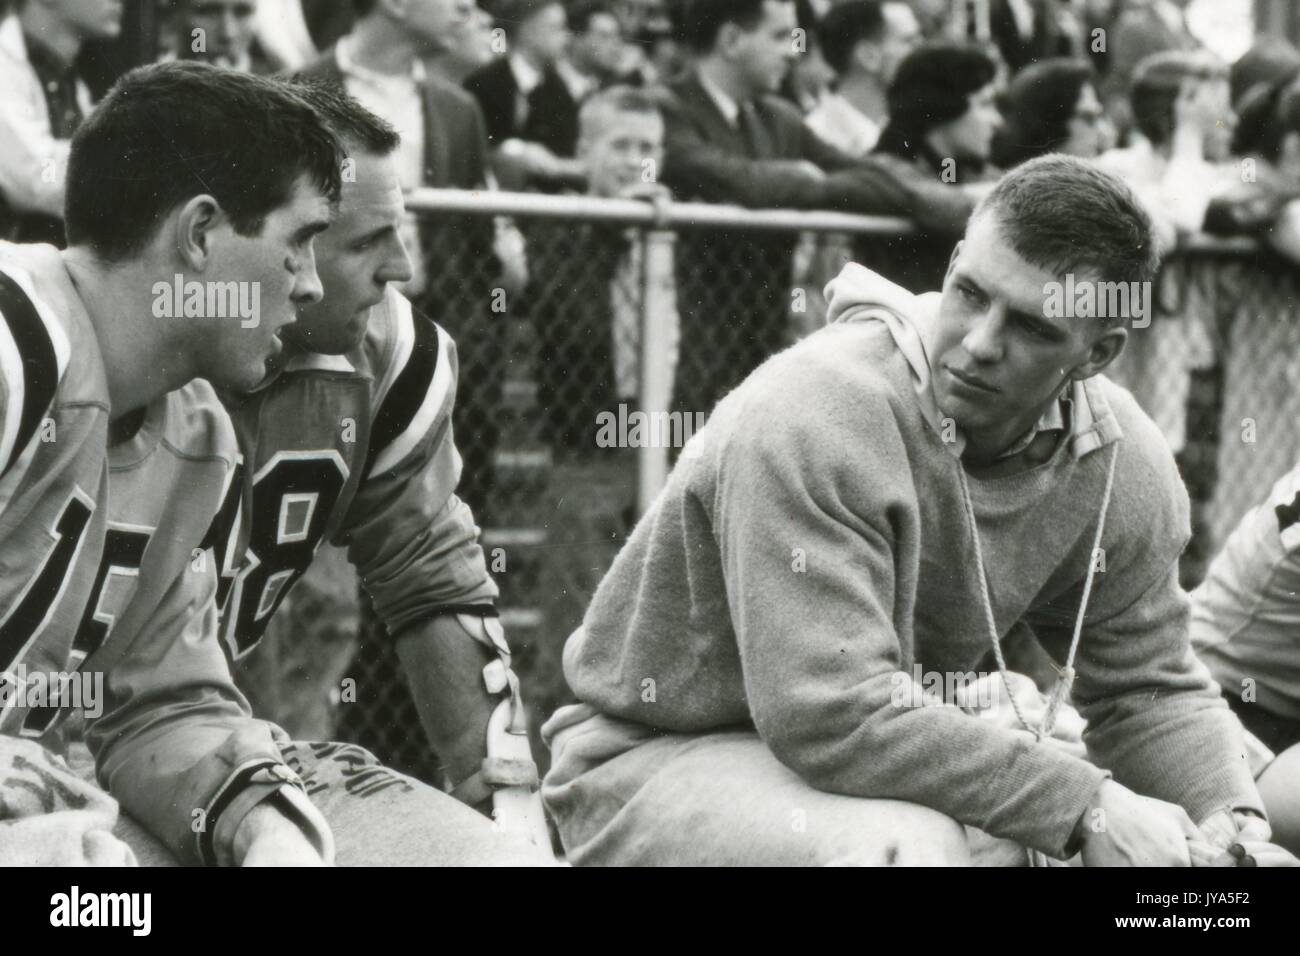 Ein junger Lacrosse-Spieler der Johns Hopkins University, der ein Sweatshirt auf seiner Uniform trägt, sitzt auf einer Bank und spricht mit zwei uniformierten Teamkollegen, einer Menge Zuschauer, die hinter einem Zaun im Hintergrund stehen, 1960. Stockfoto